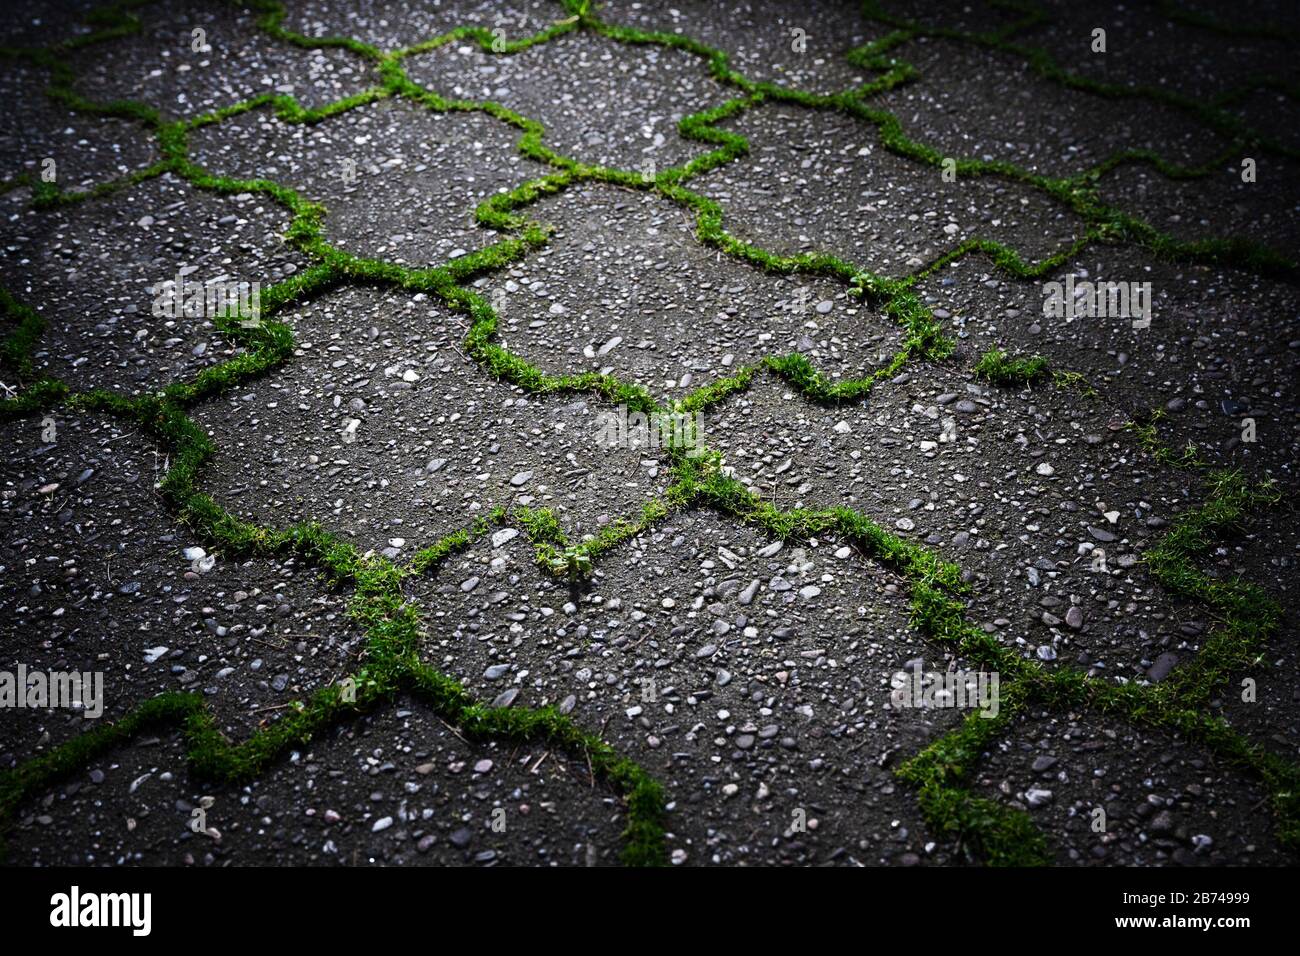 Les mauvaises herbes vertes poussent à partir des joints de pavés de béton gris dans la lumière pittoresque. Banque D'Images